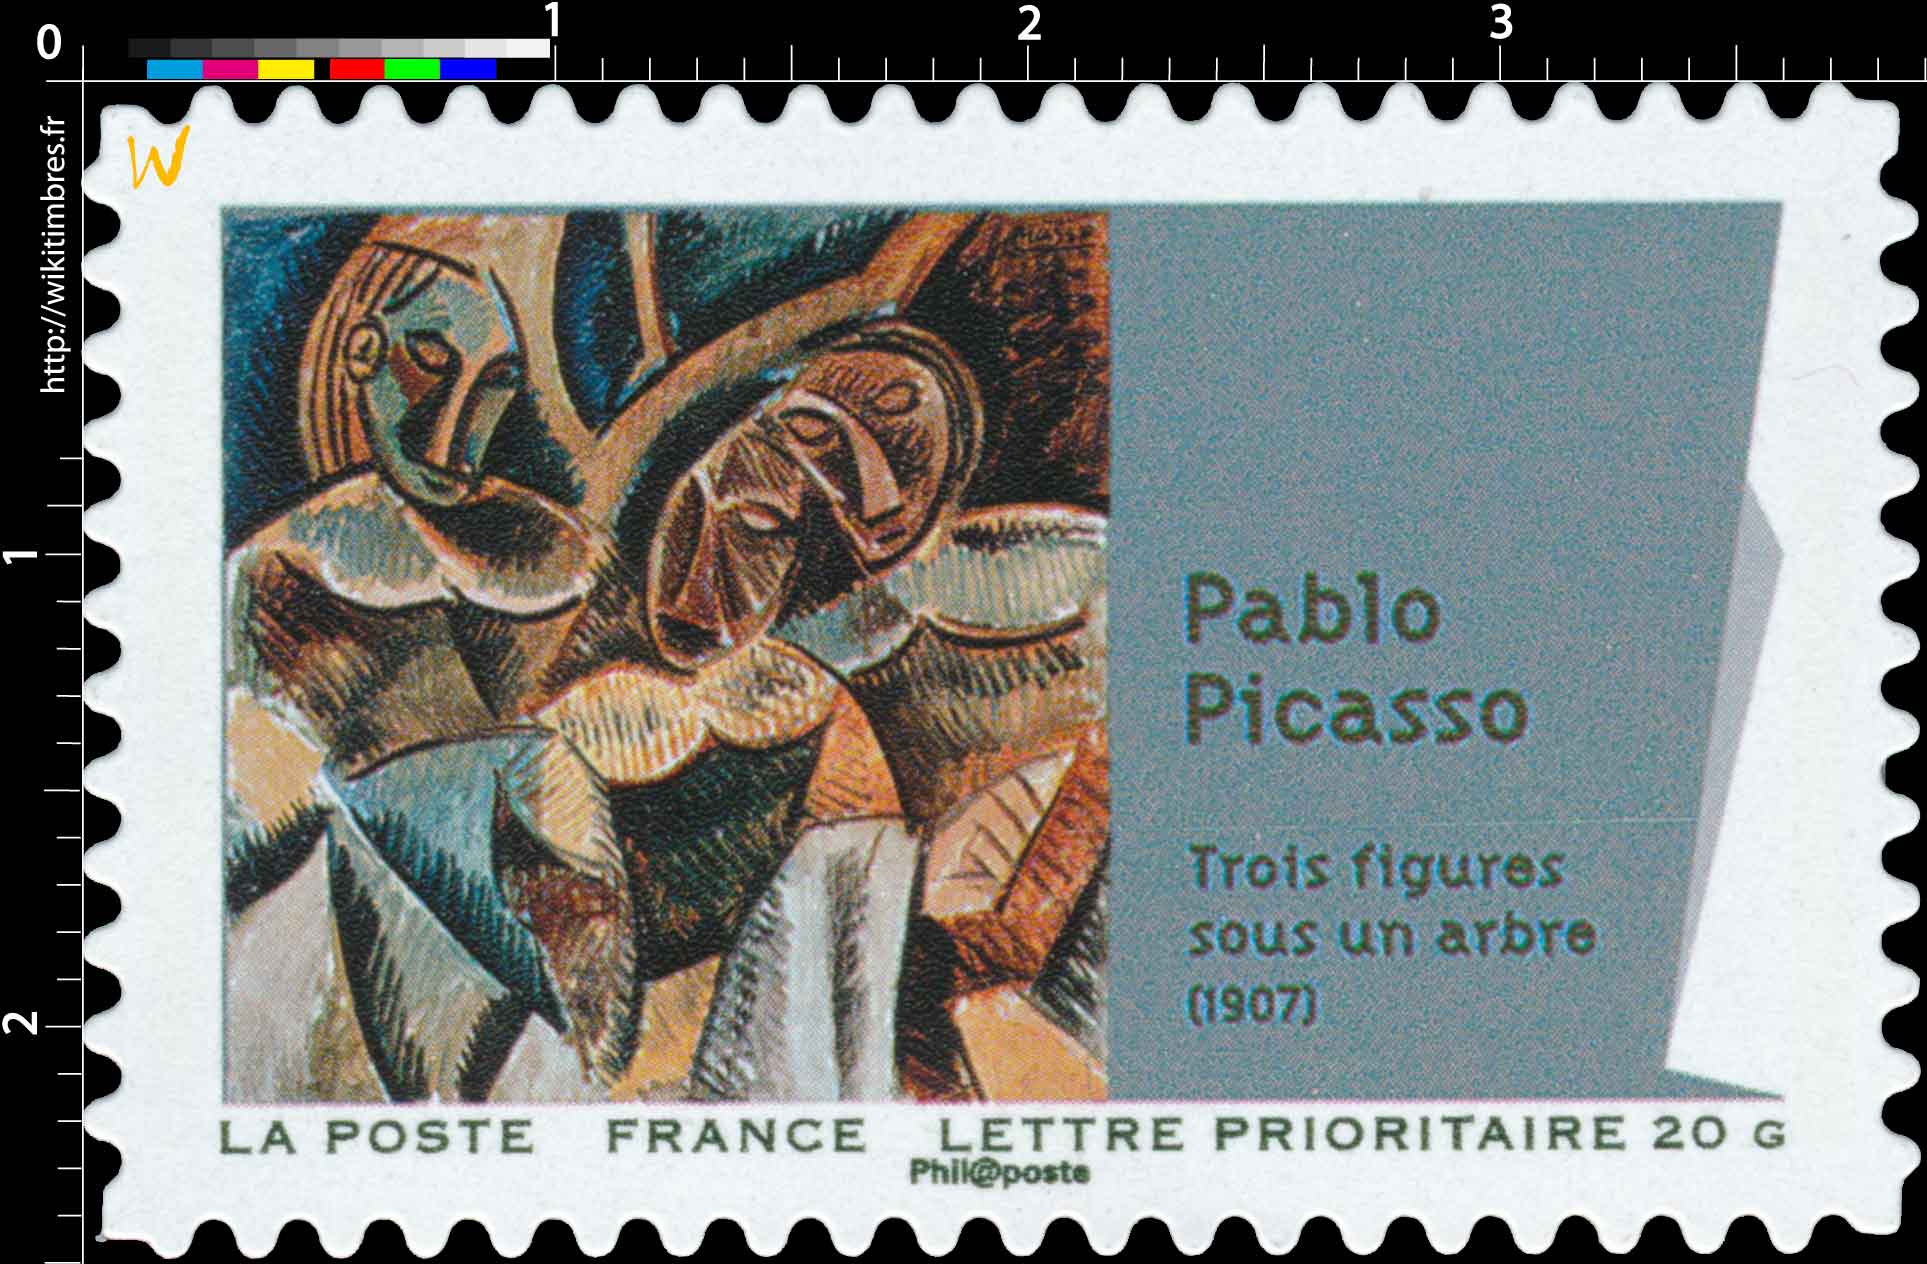 Pablo Picasso trois figures sous un arbre (1907)